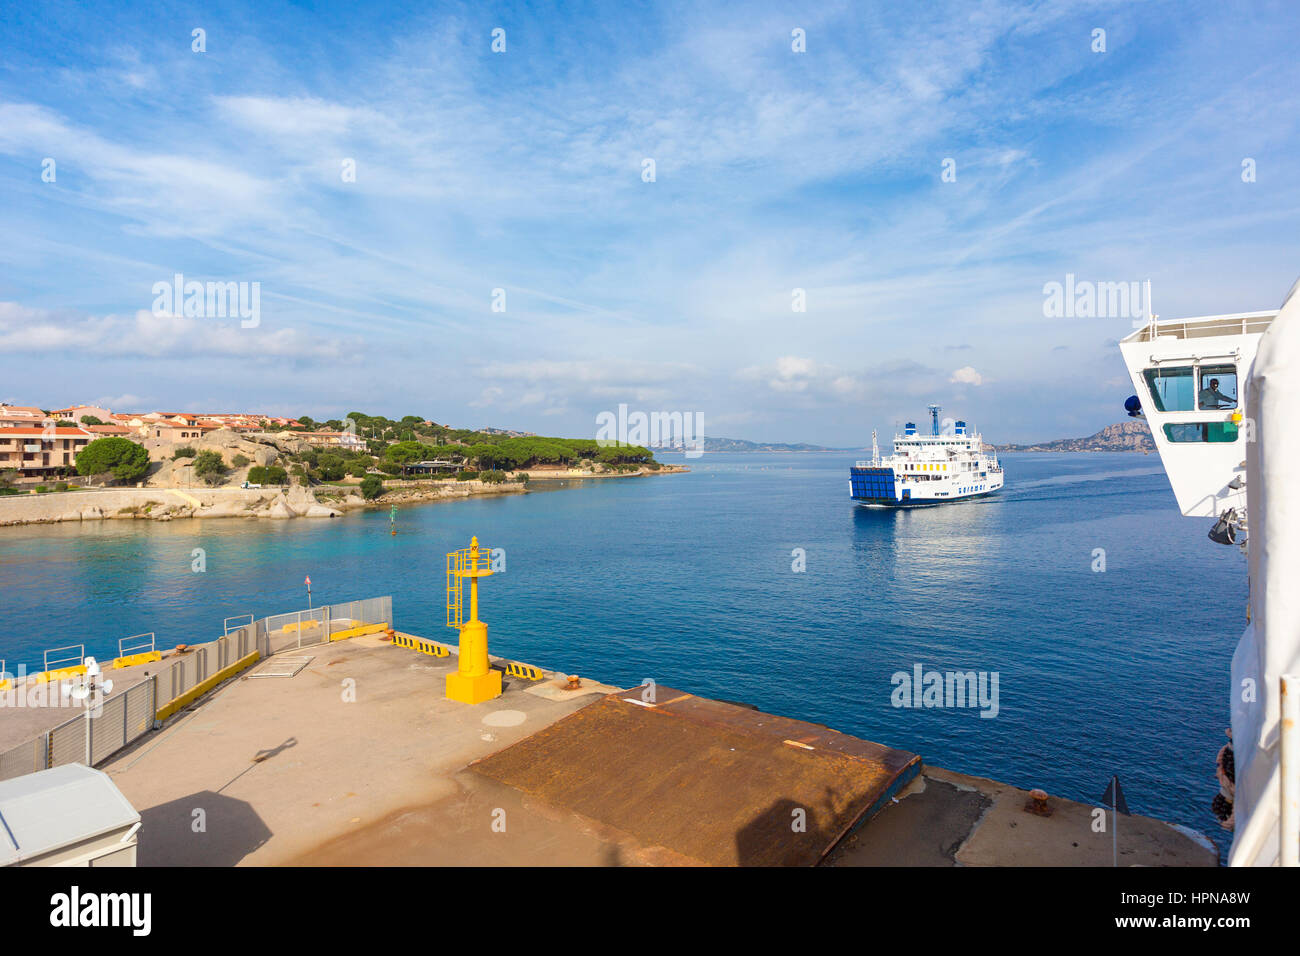 Saremar traghetto naviga da Palau, (Nord Sardegna) per l'isola di La Maddalena, l'isola principale dell'Arcipelago di Maddalena,Italia Foto Stock